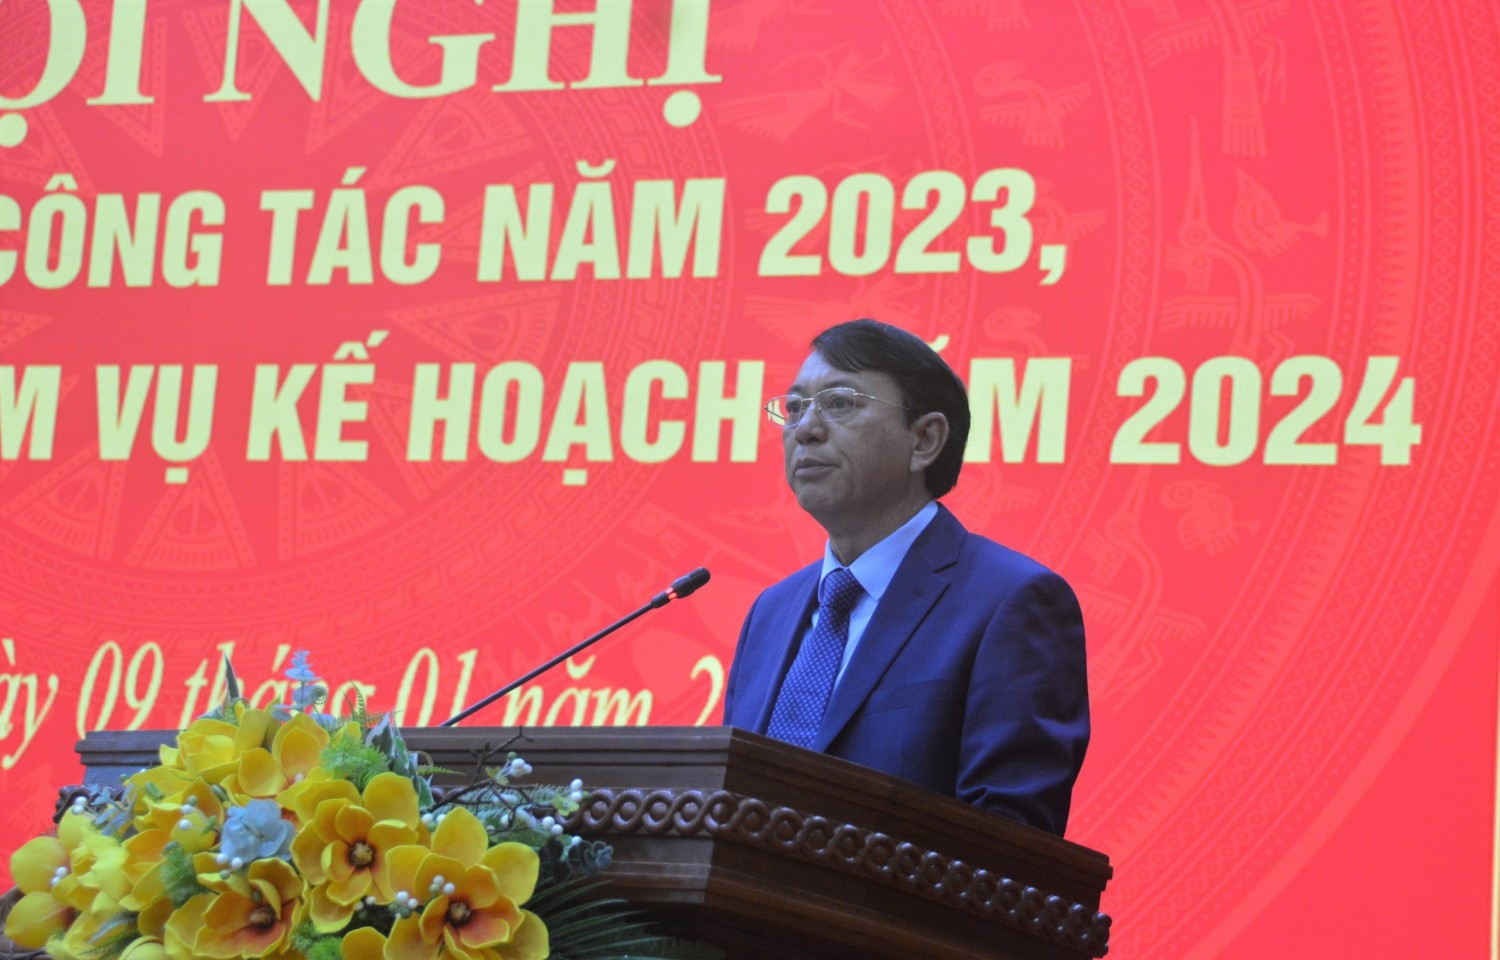 Chủ tịch UBND tỉnh Hoàng Xuân Ánh báo cáo tổng kết năm 2023, phương hướng, nhiệm vụ năm 2024 (tại Hội nghị tổng kết công tác năm 2023, triển khai nhiệm vụ năm 2024, ngày 09/01/2024).